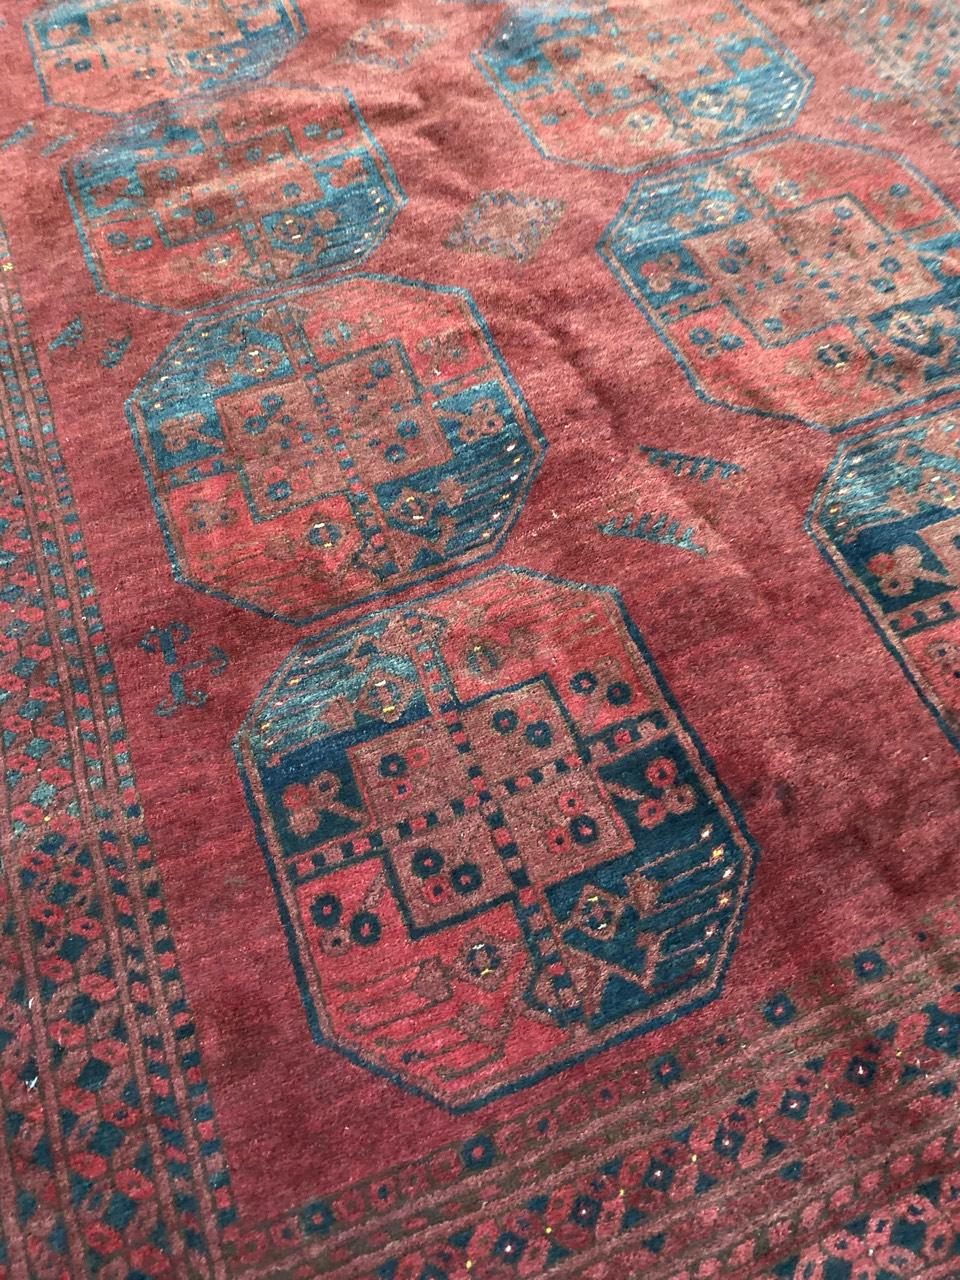 Schöner turkmenischer afghanischer Teppich mit schönem geometrischem Muster und roten, braunen und blauen Farben, komplett handgeknüpft mit Wollsamt auf Wollfond.

✨✨✨
